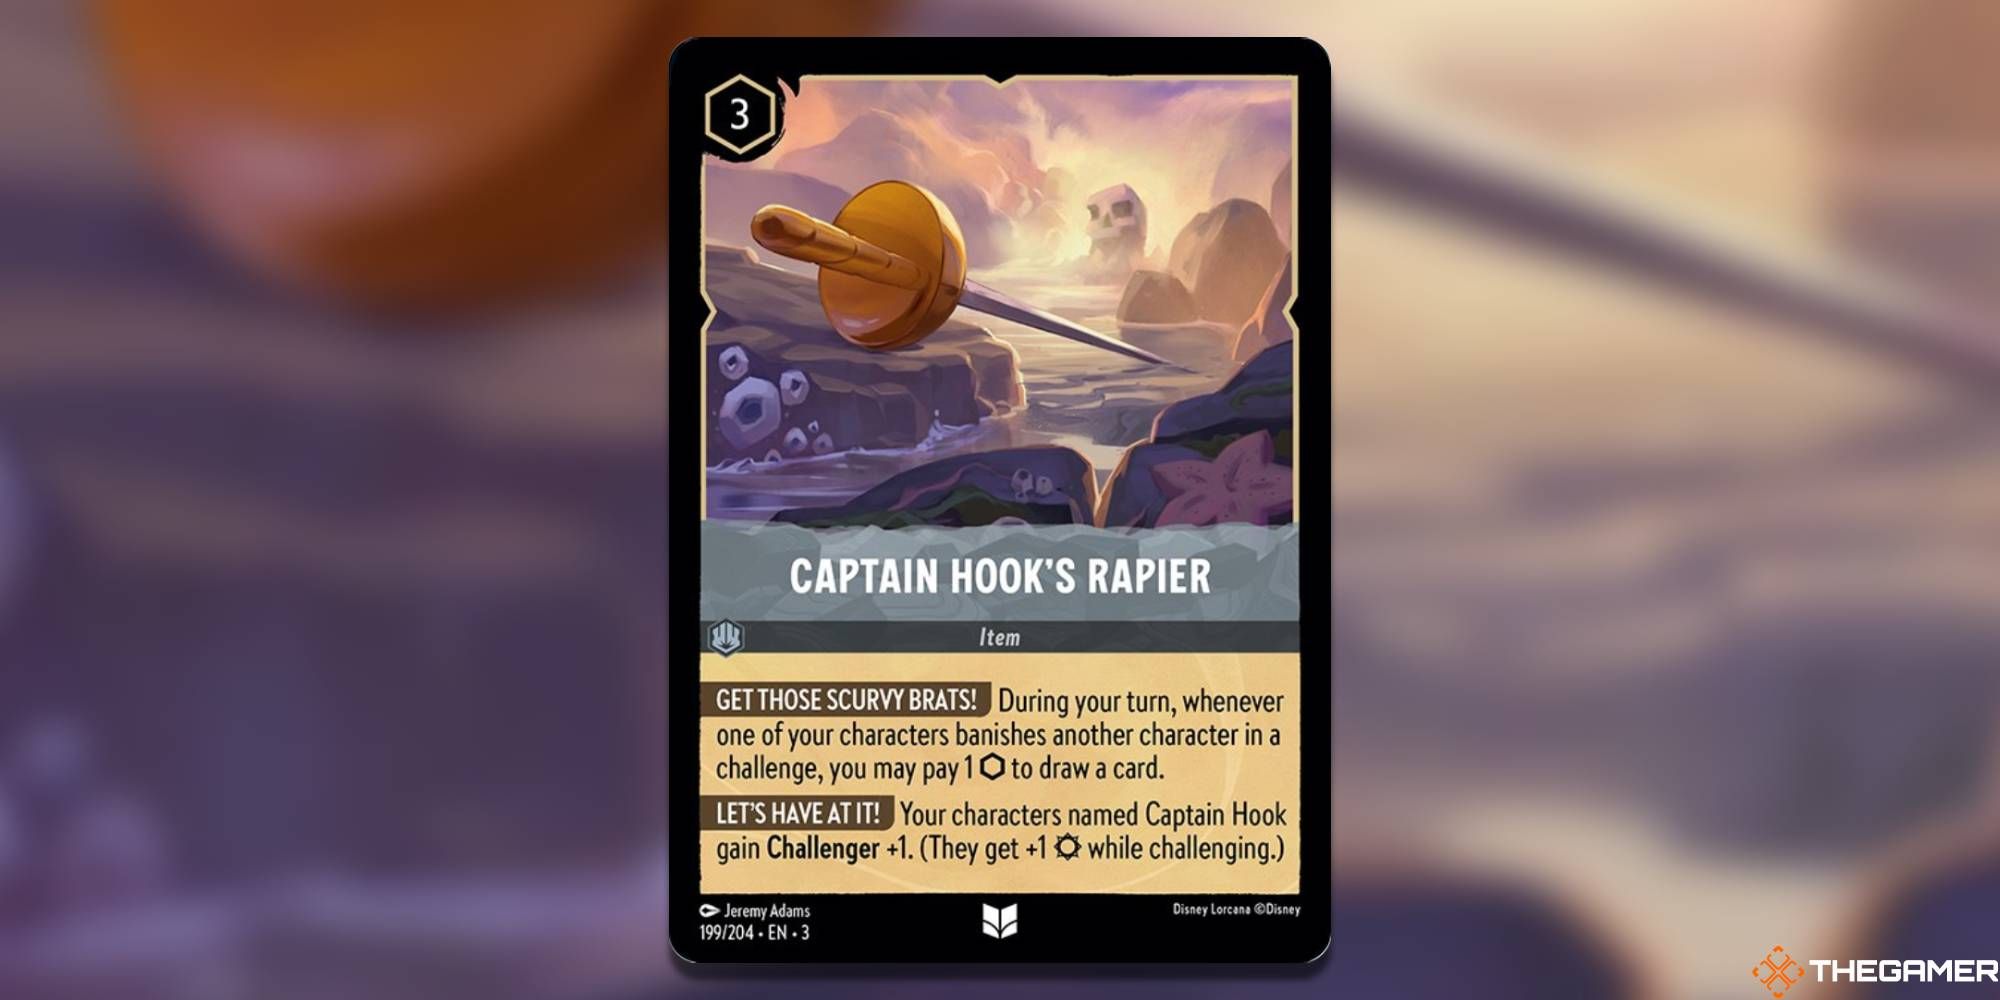 Checklist Steel Lorcana Card - Captain Hook - Disney Lorcana English Cards